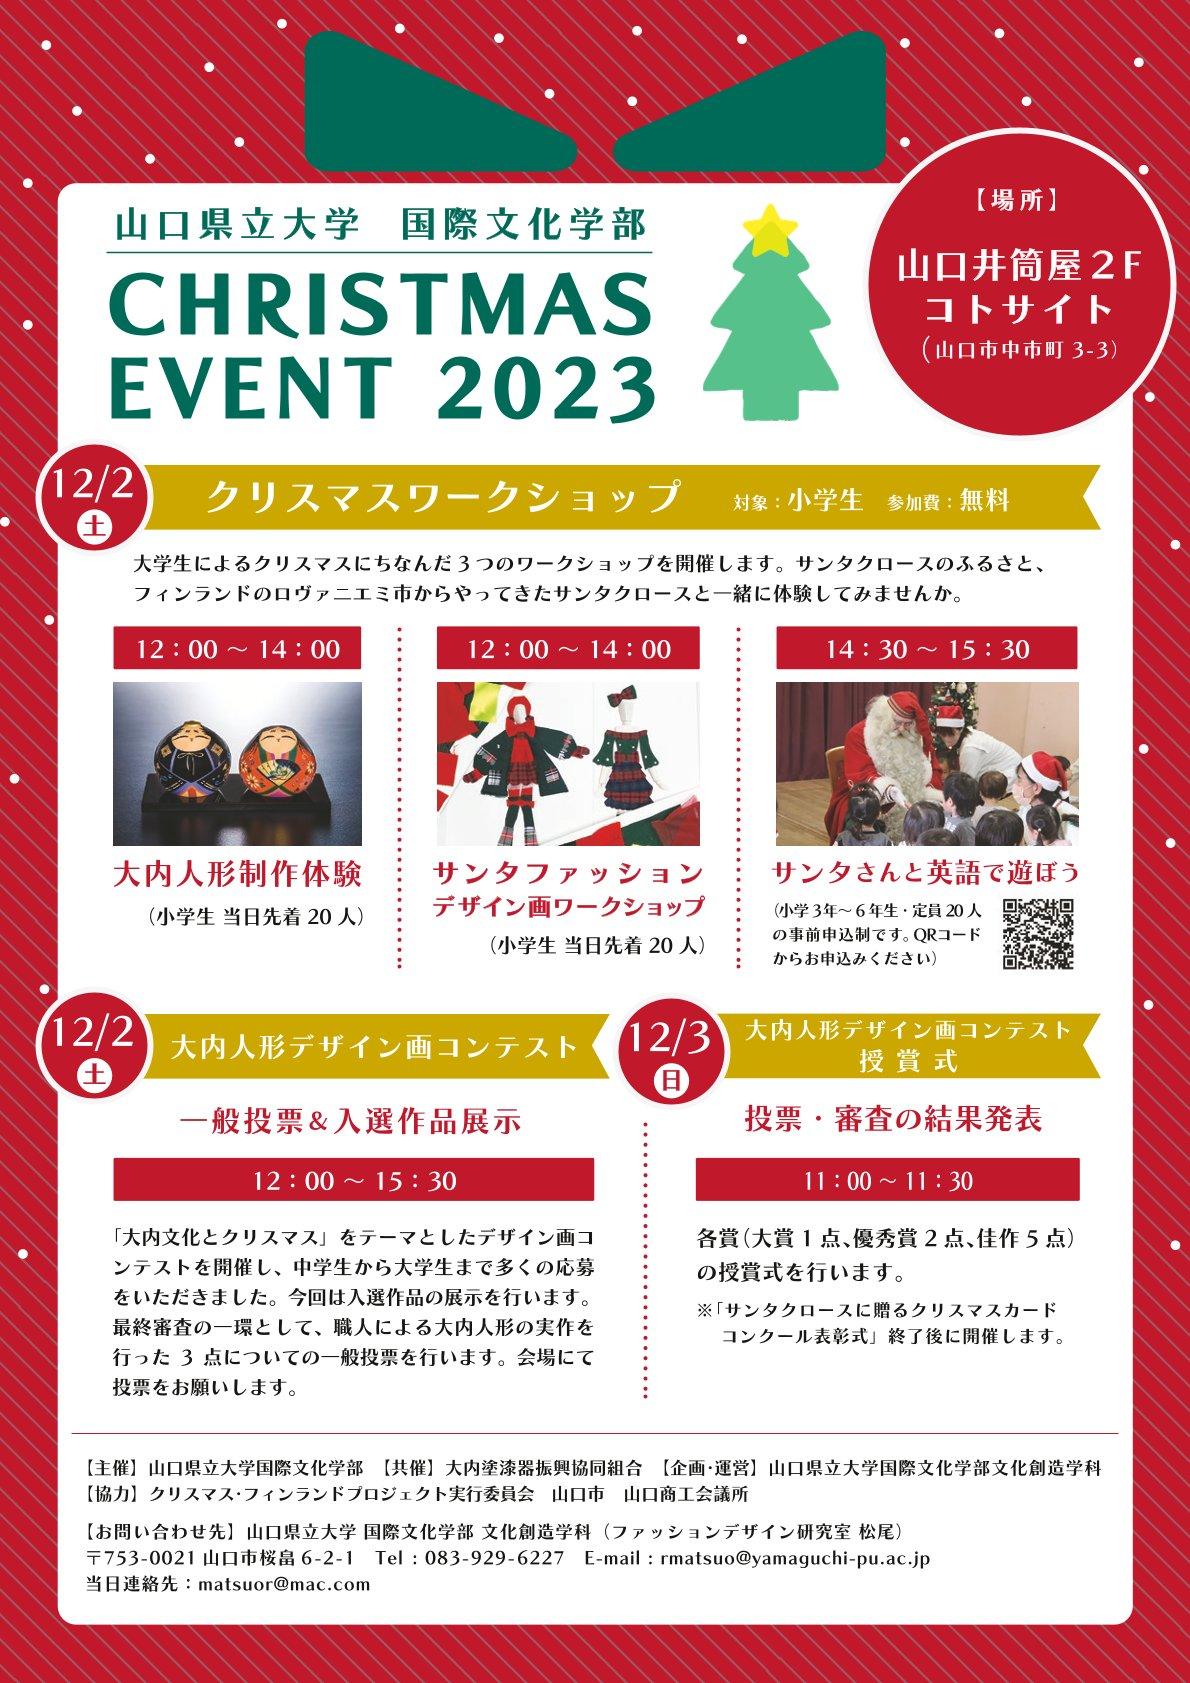 国際文化学部主催「CHRISTMAS EVENT 2023」 リーフレット